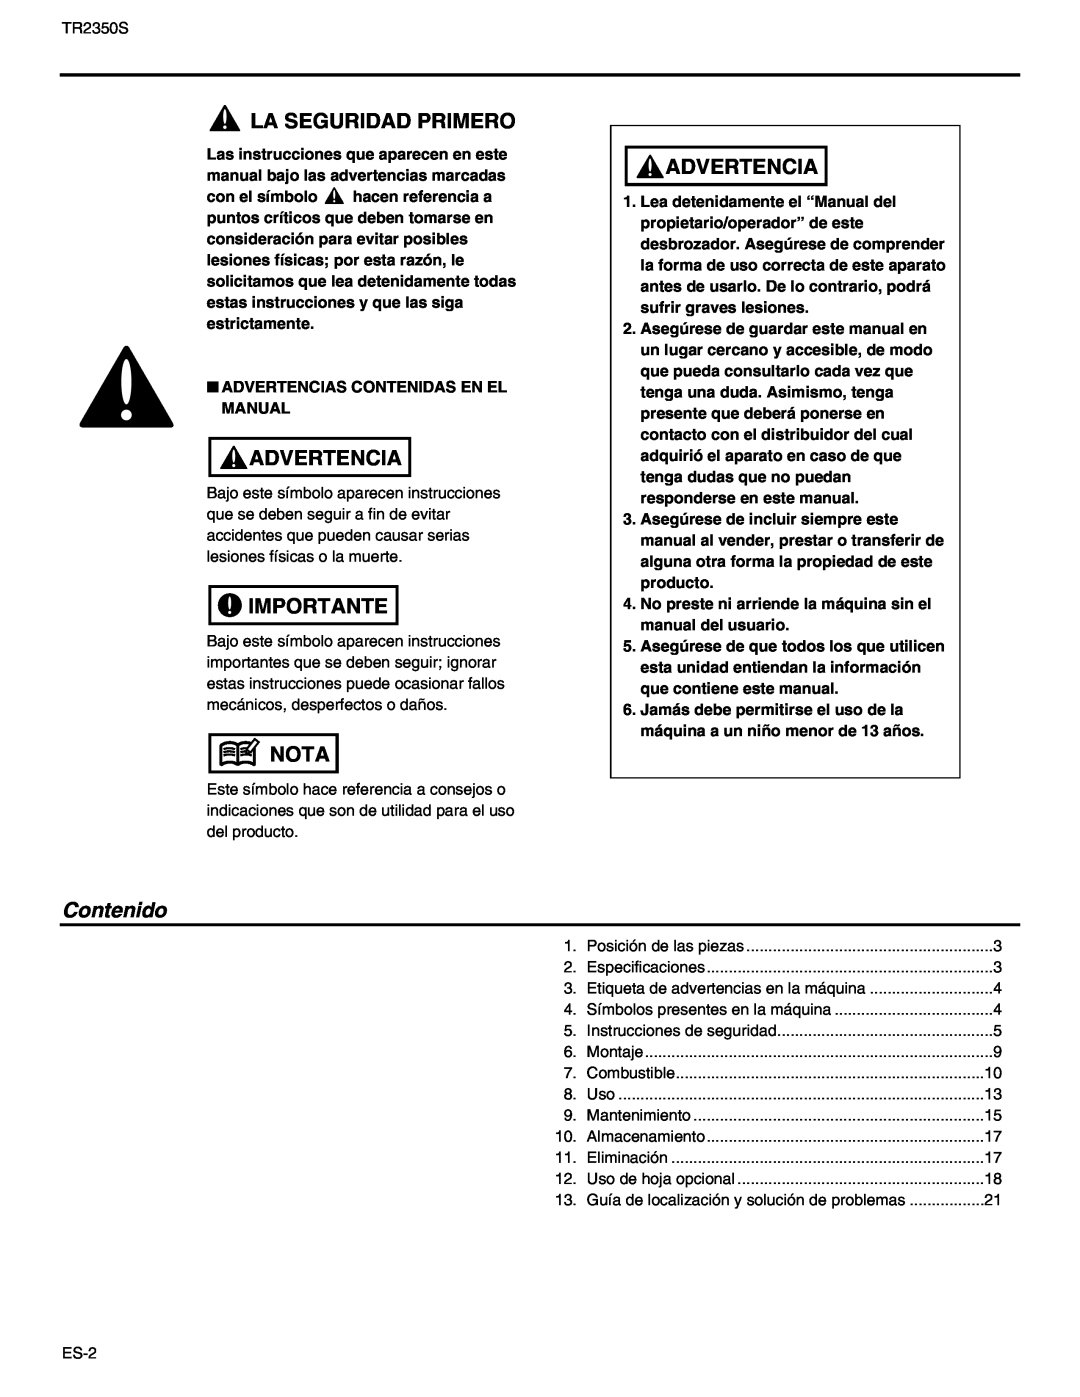 RedMax TR2350S manual La Seguridad Primero, Advertencia, Importante, Nota, Contenido 